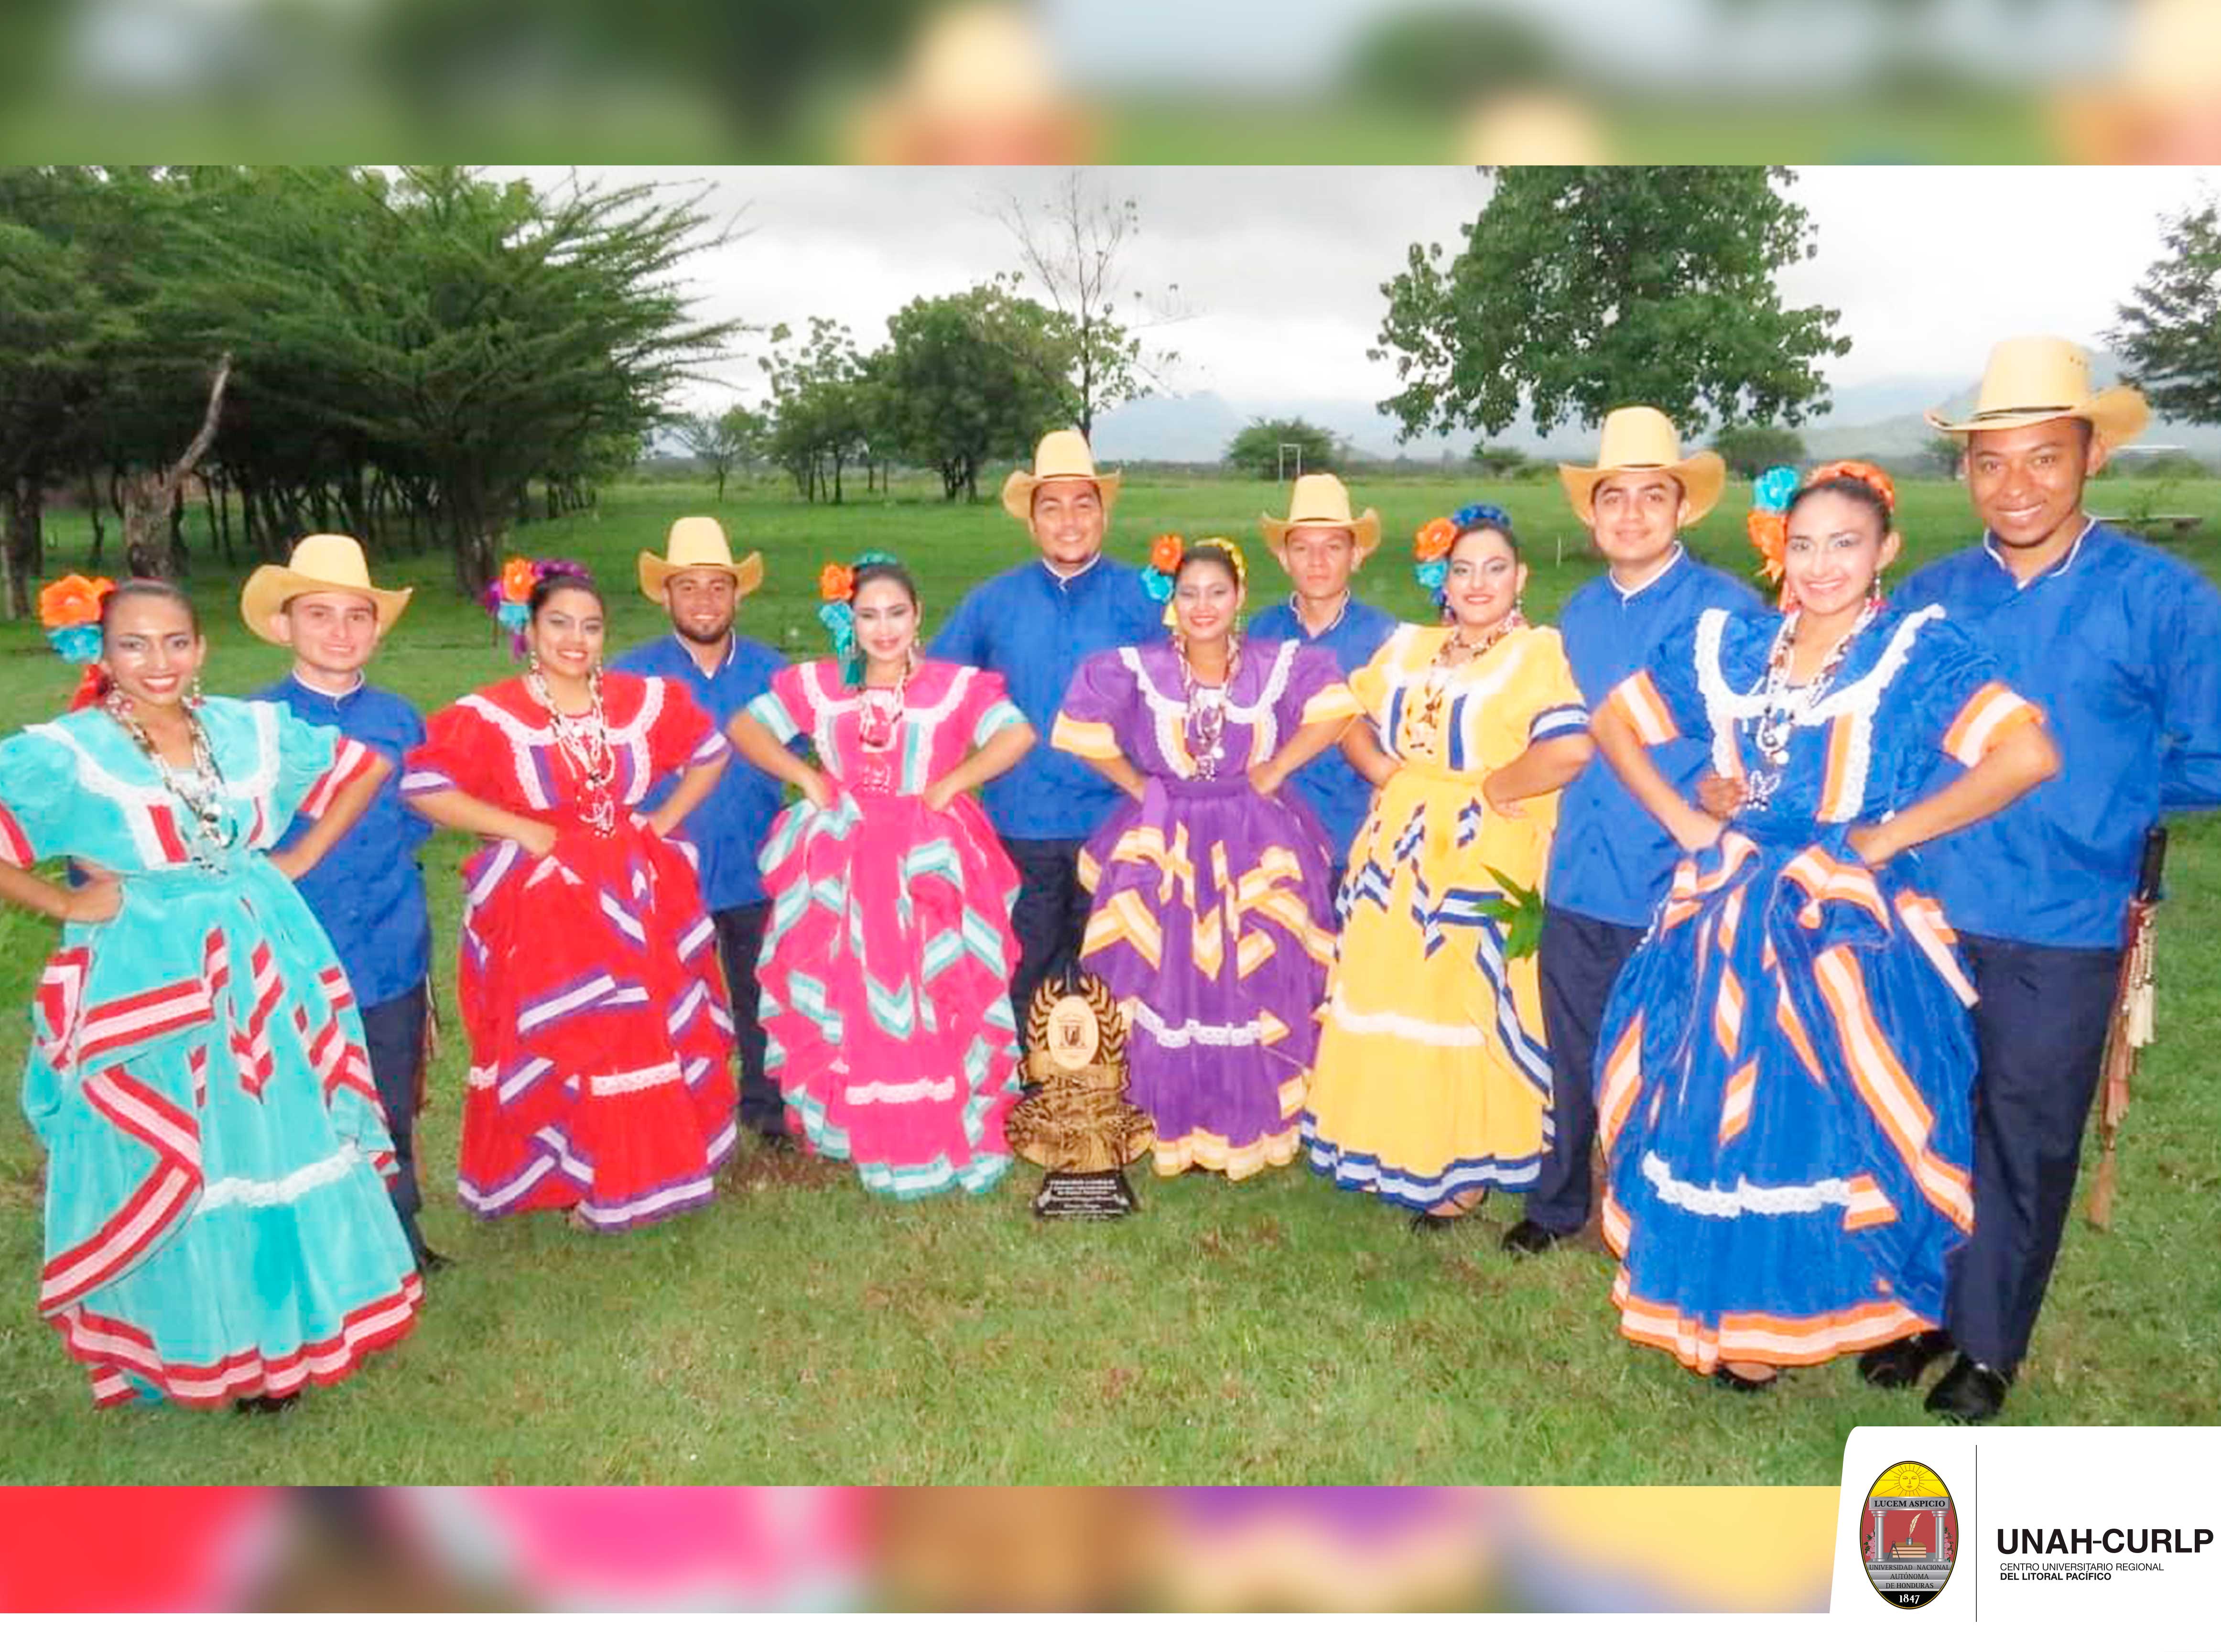 La UNAH-CURLP obtiene el Tercer Lugar en el II Concurso Interuniversitario  de Danzas Folklóricas realizado por la UPNFM Choluteca. - Blogs UNAH